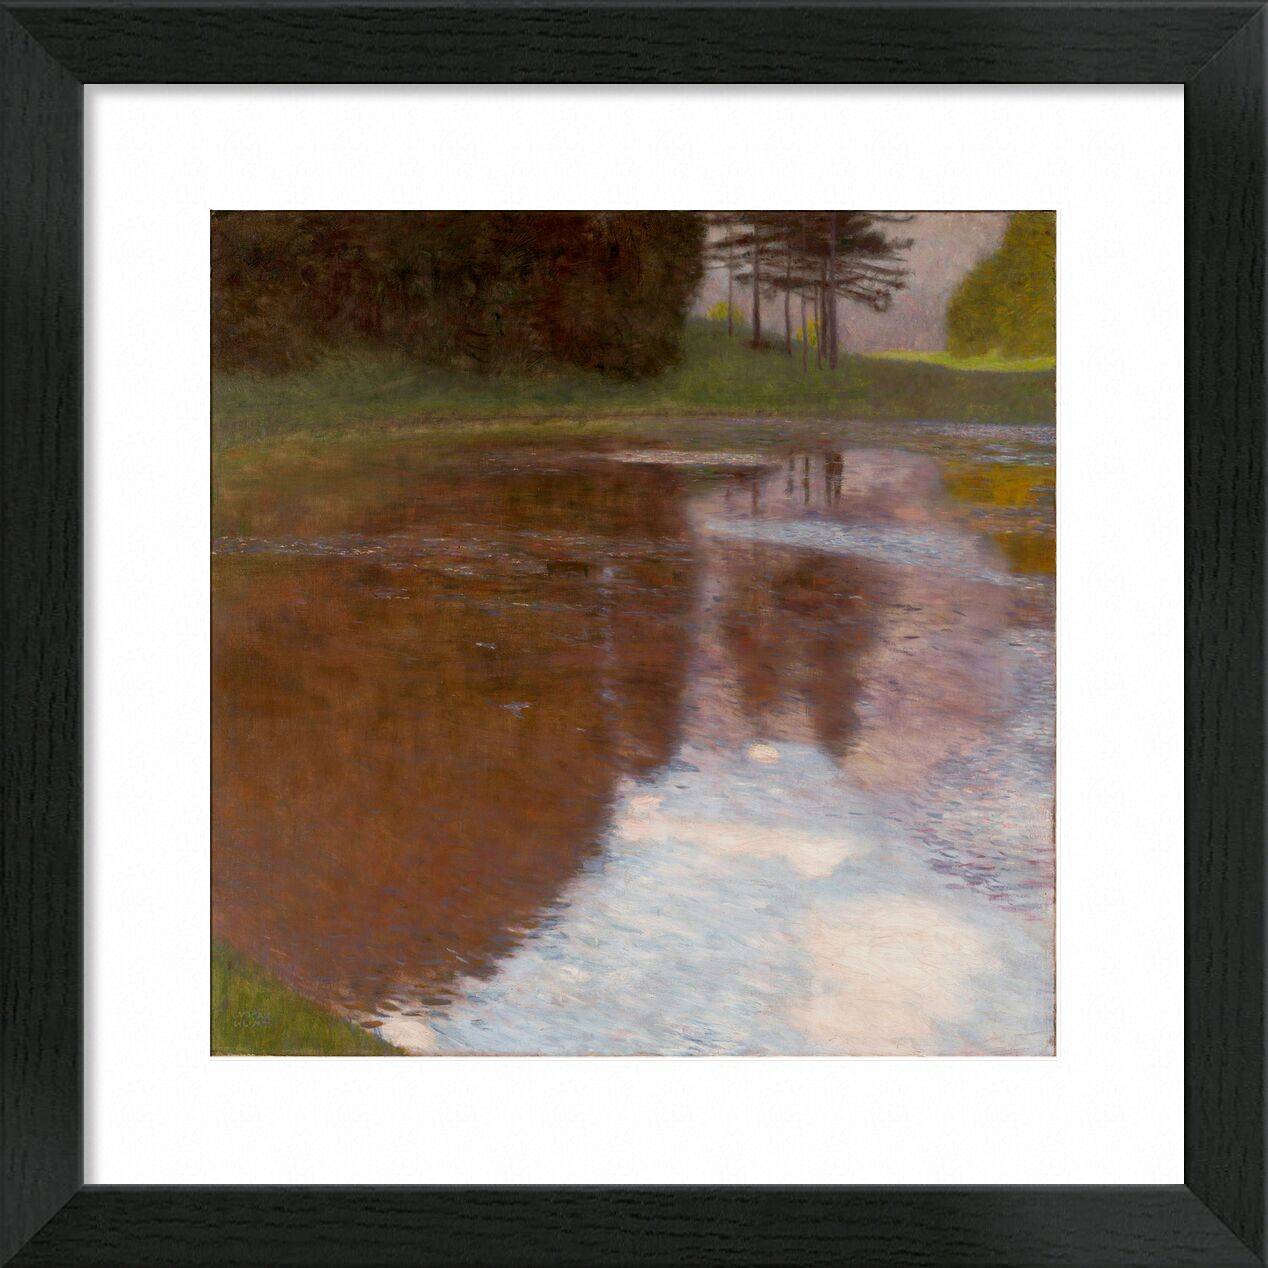 Ein Morgen am Teich - Gustav Klimt von Bildende Kunst, Prodi Art, Reflexionen, Natur, Baum, Teich, Wasser, KLIMT